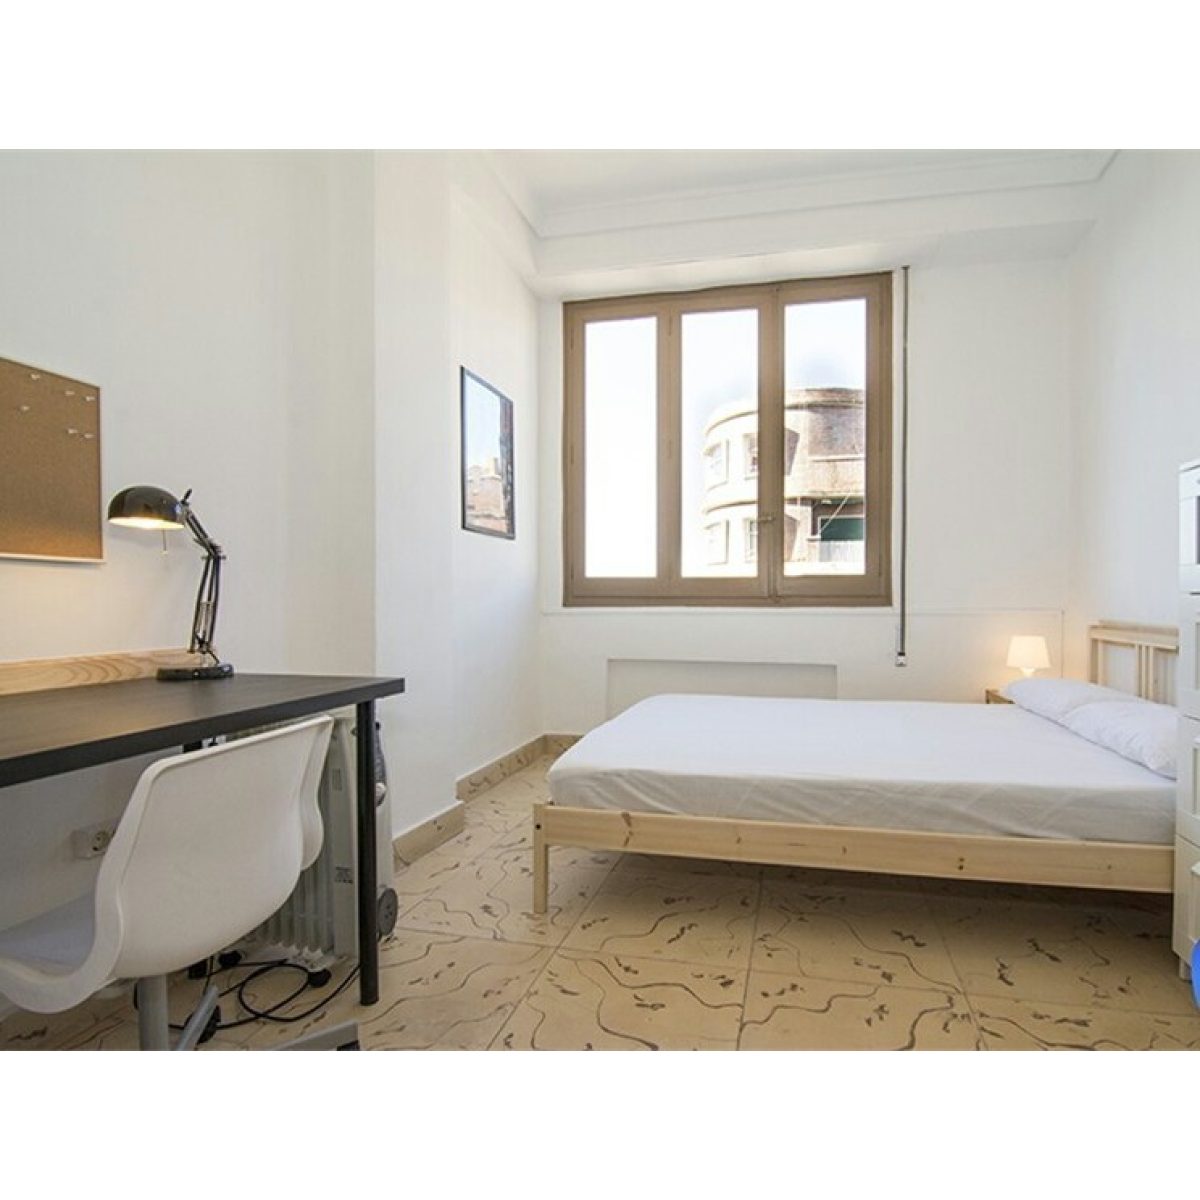 Linked single room in Leoben (Leoben studentenheim) – available for rent 2